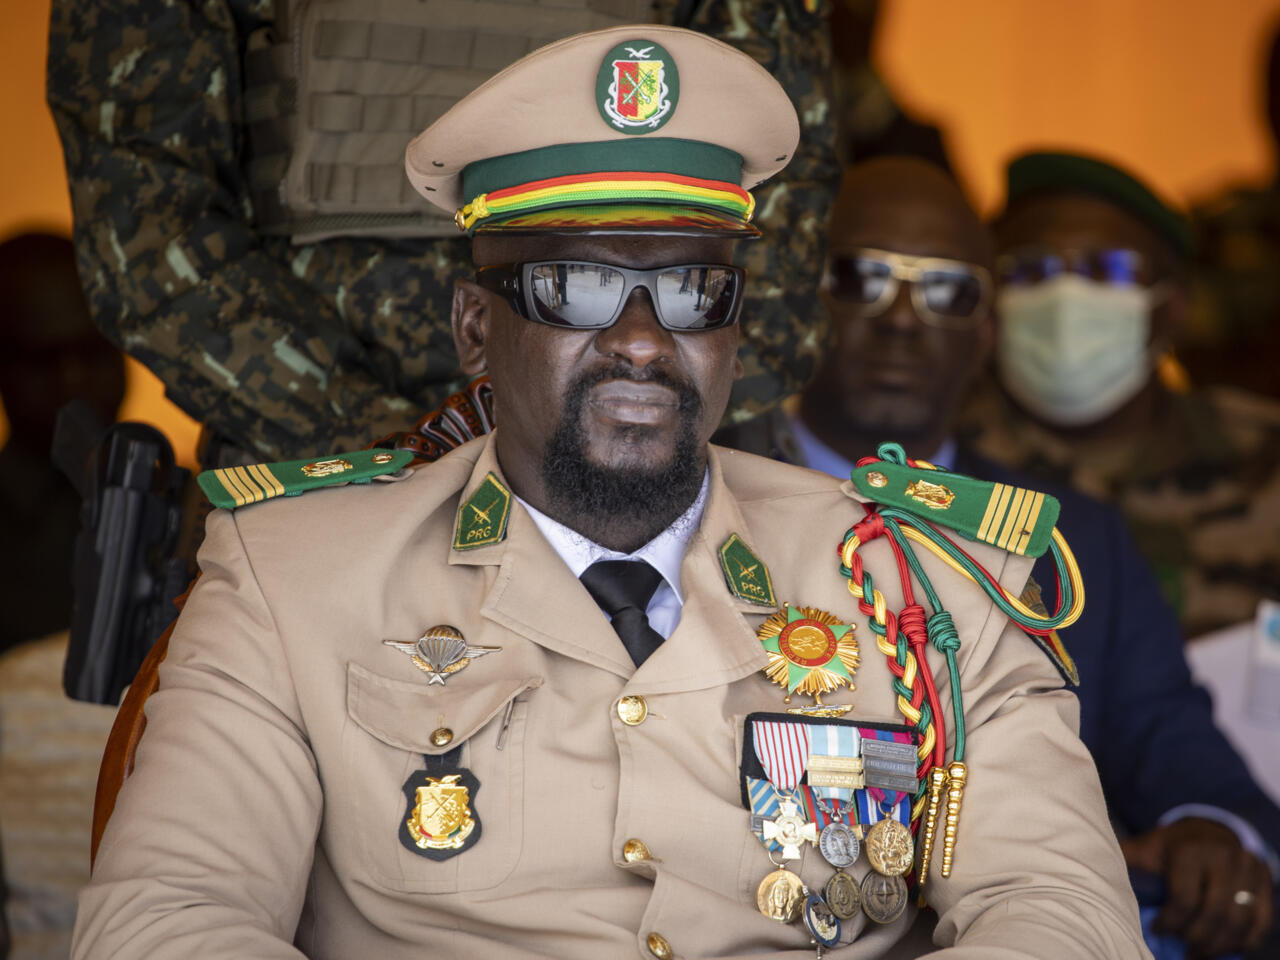 Guinée: l’opposition s’organise autour de l’Union sacrée pour faire pression sur la transition